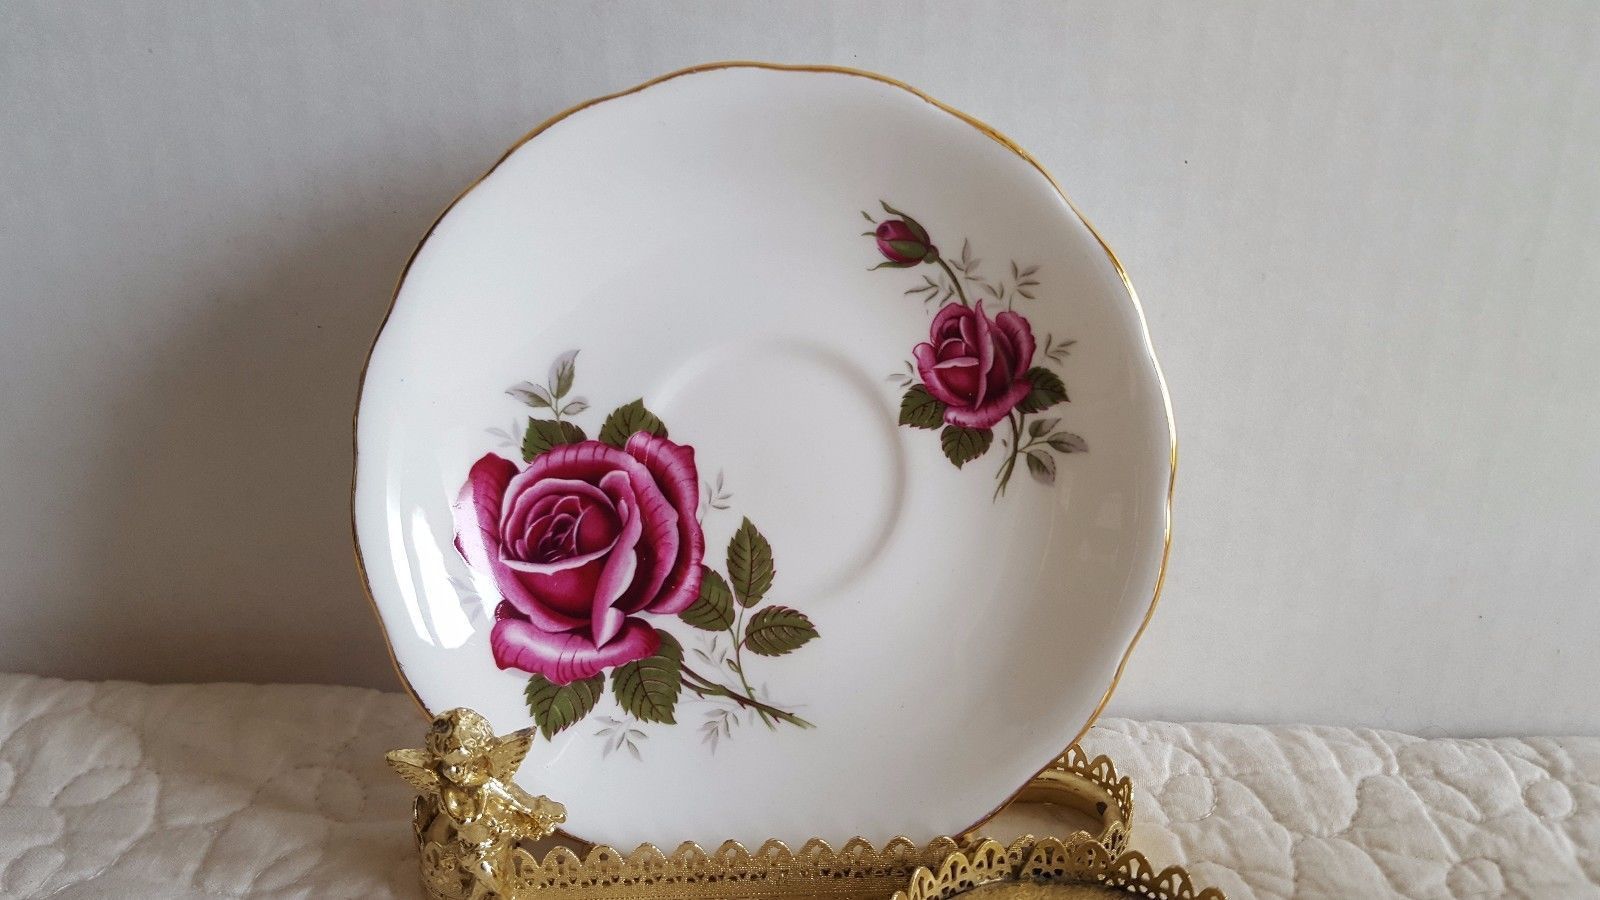 8 Pieces of Vintage Royal Kent Bone China Roses #8261 Tea Cup & Saucer Set